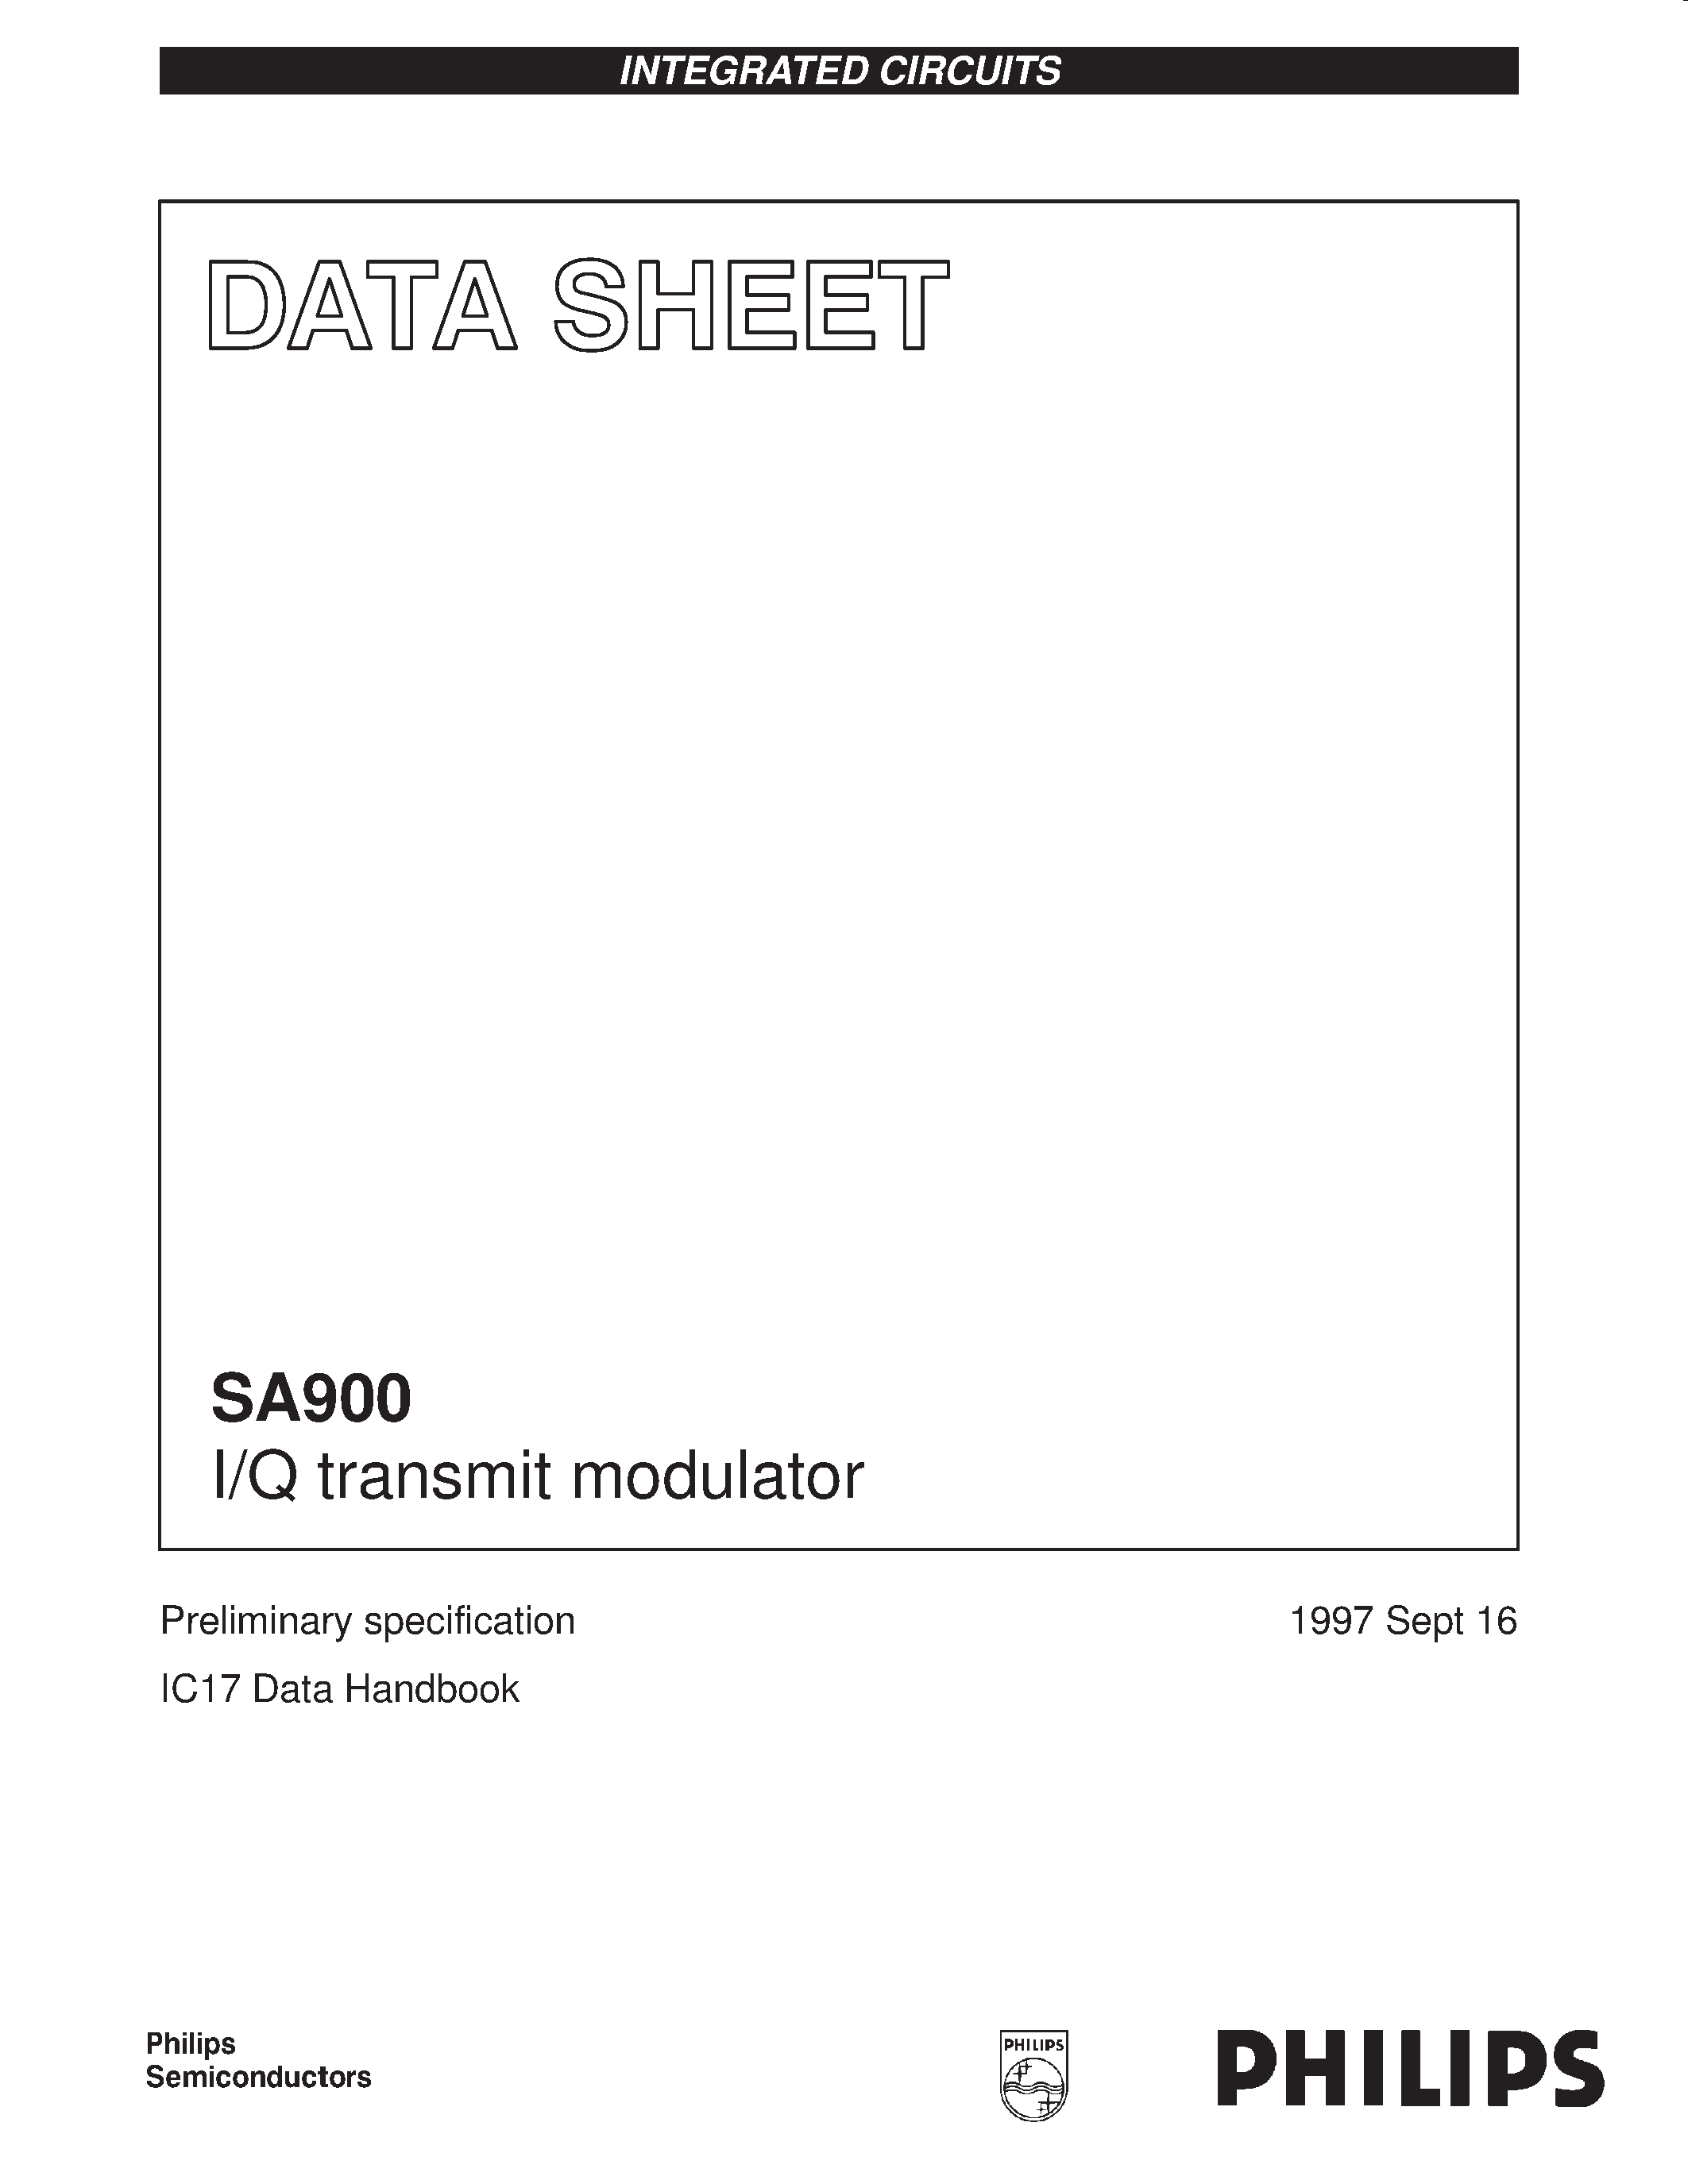 Даташит SA900BE - I/Q transmit modulator страница 1